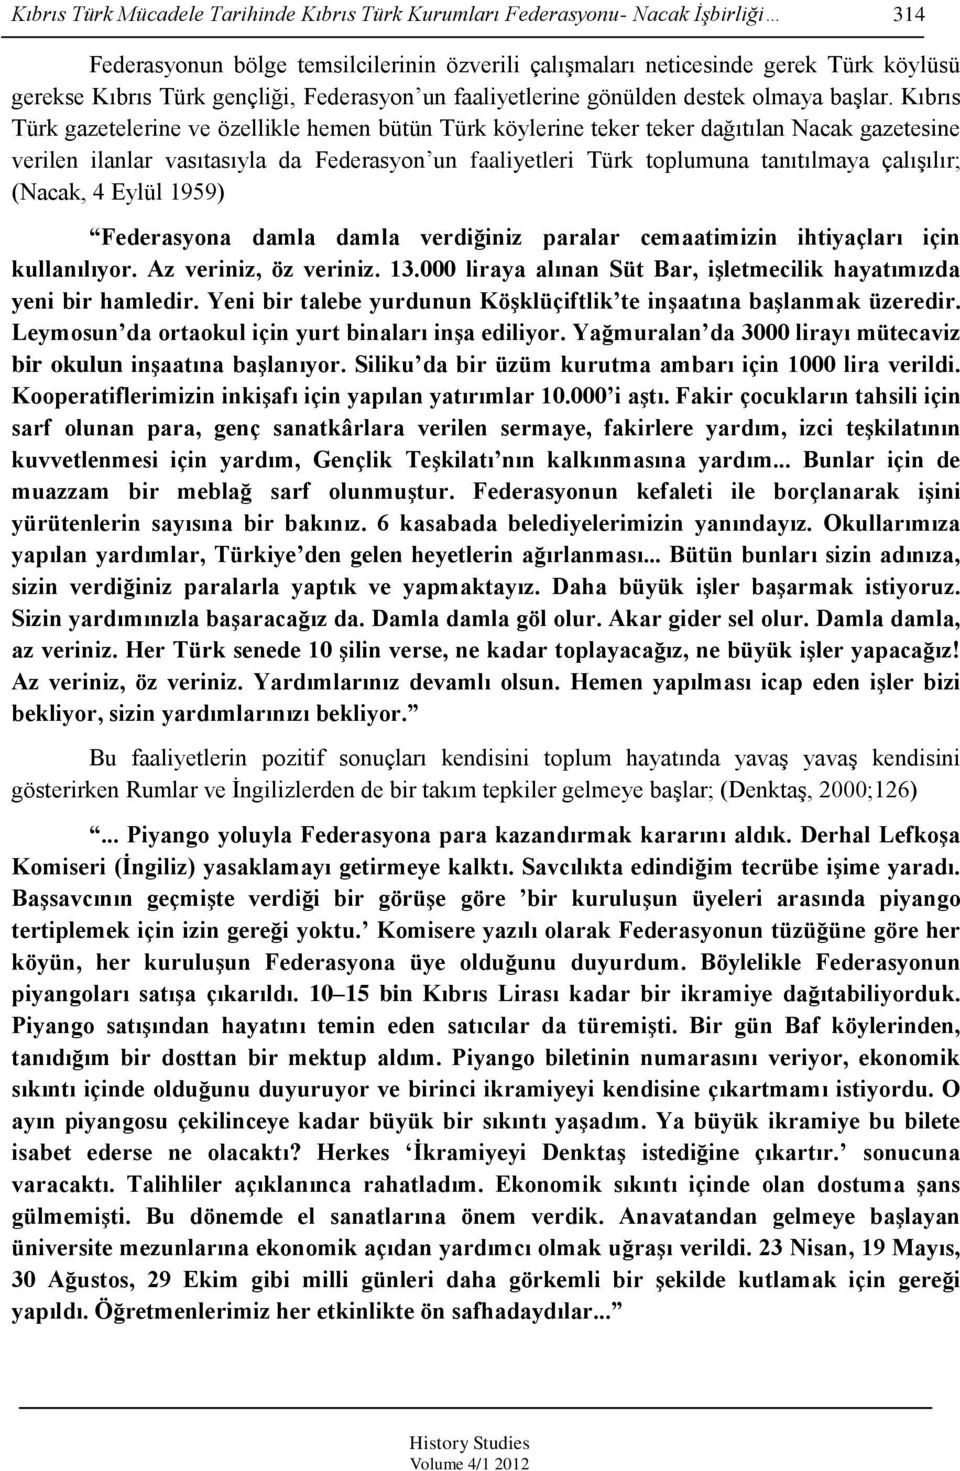 Kıbrıs Türk gazetelerine ve özellikle hemen bütün Türk köylerine teker teker dağıtılan Nacak gazetesine verilen ilanlar vasıtasıyla da Federasyon un faaliyetleri Türk toplumuna tanıtılmaya çalışılır;